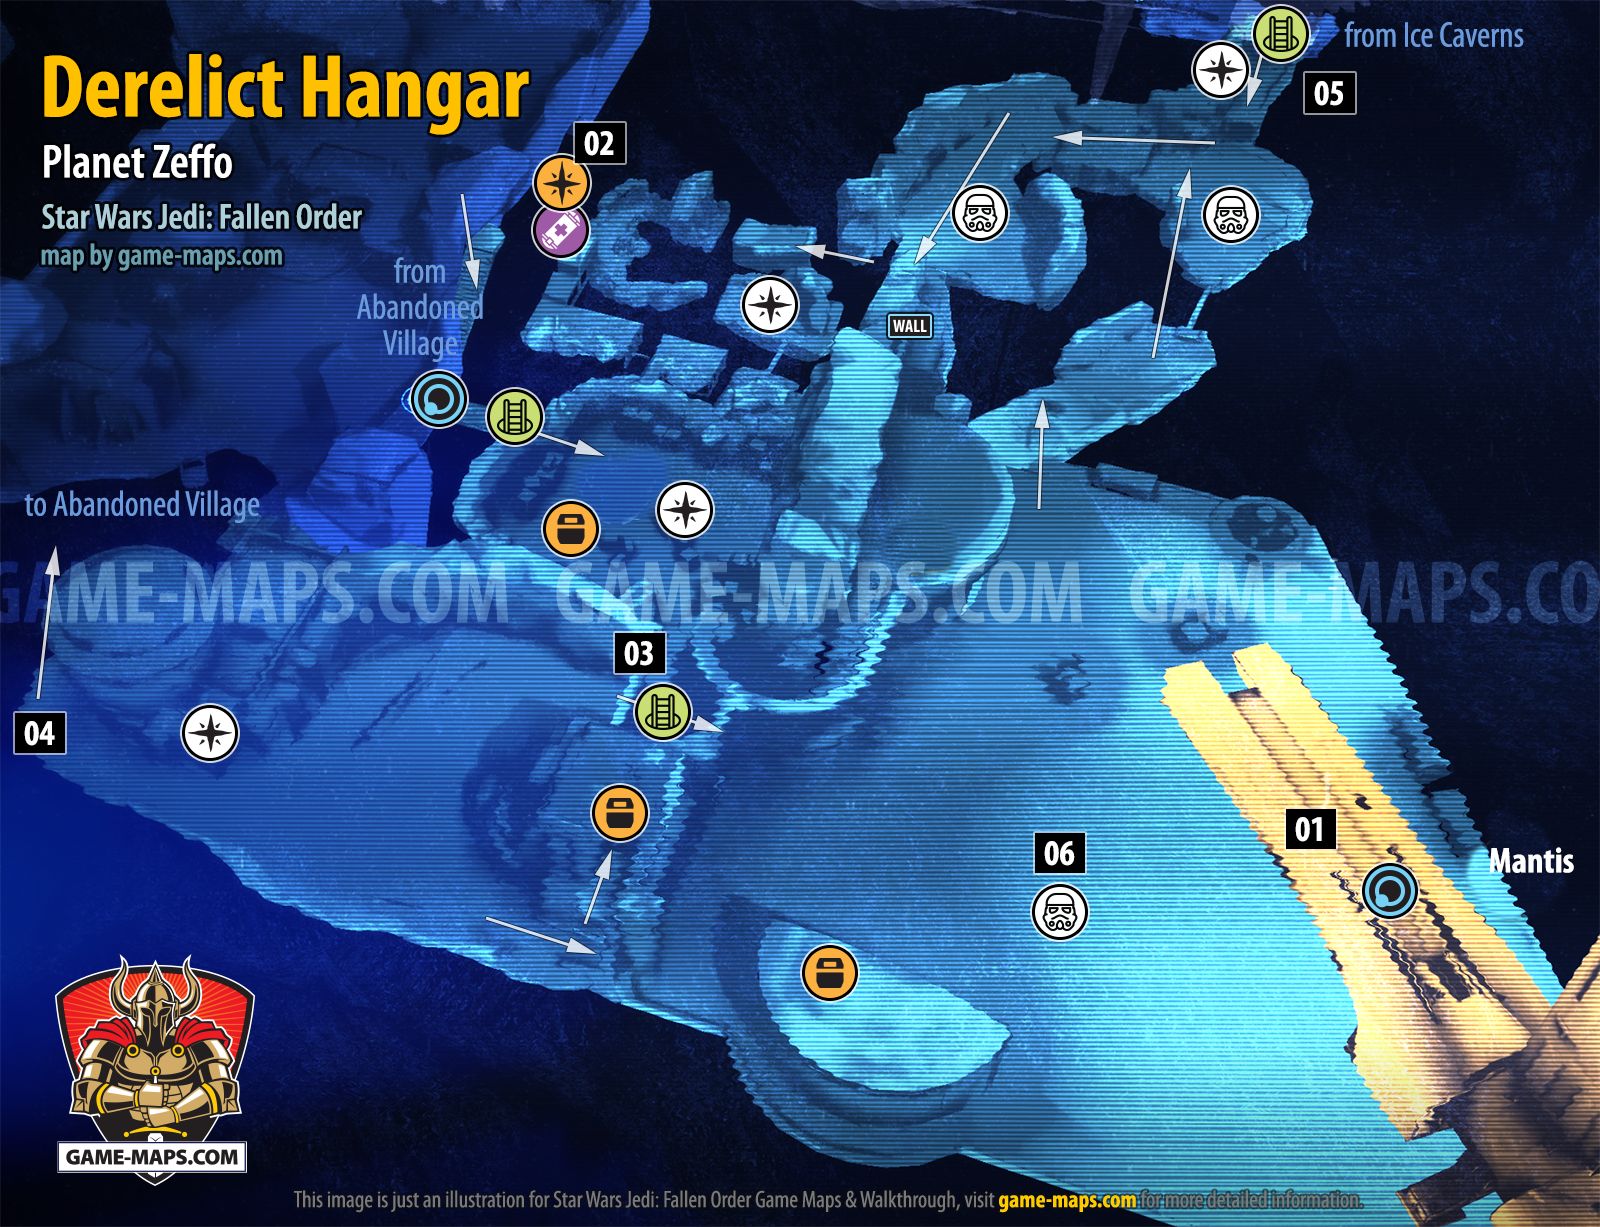 Derelict Hangar Map Star Wars Jedi: Fallen Order